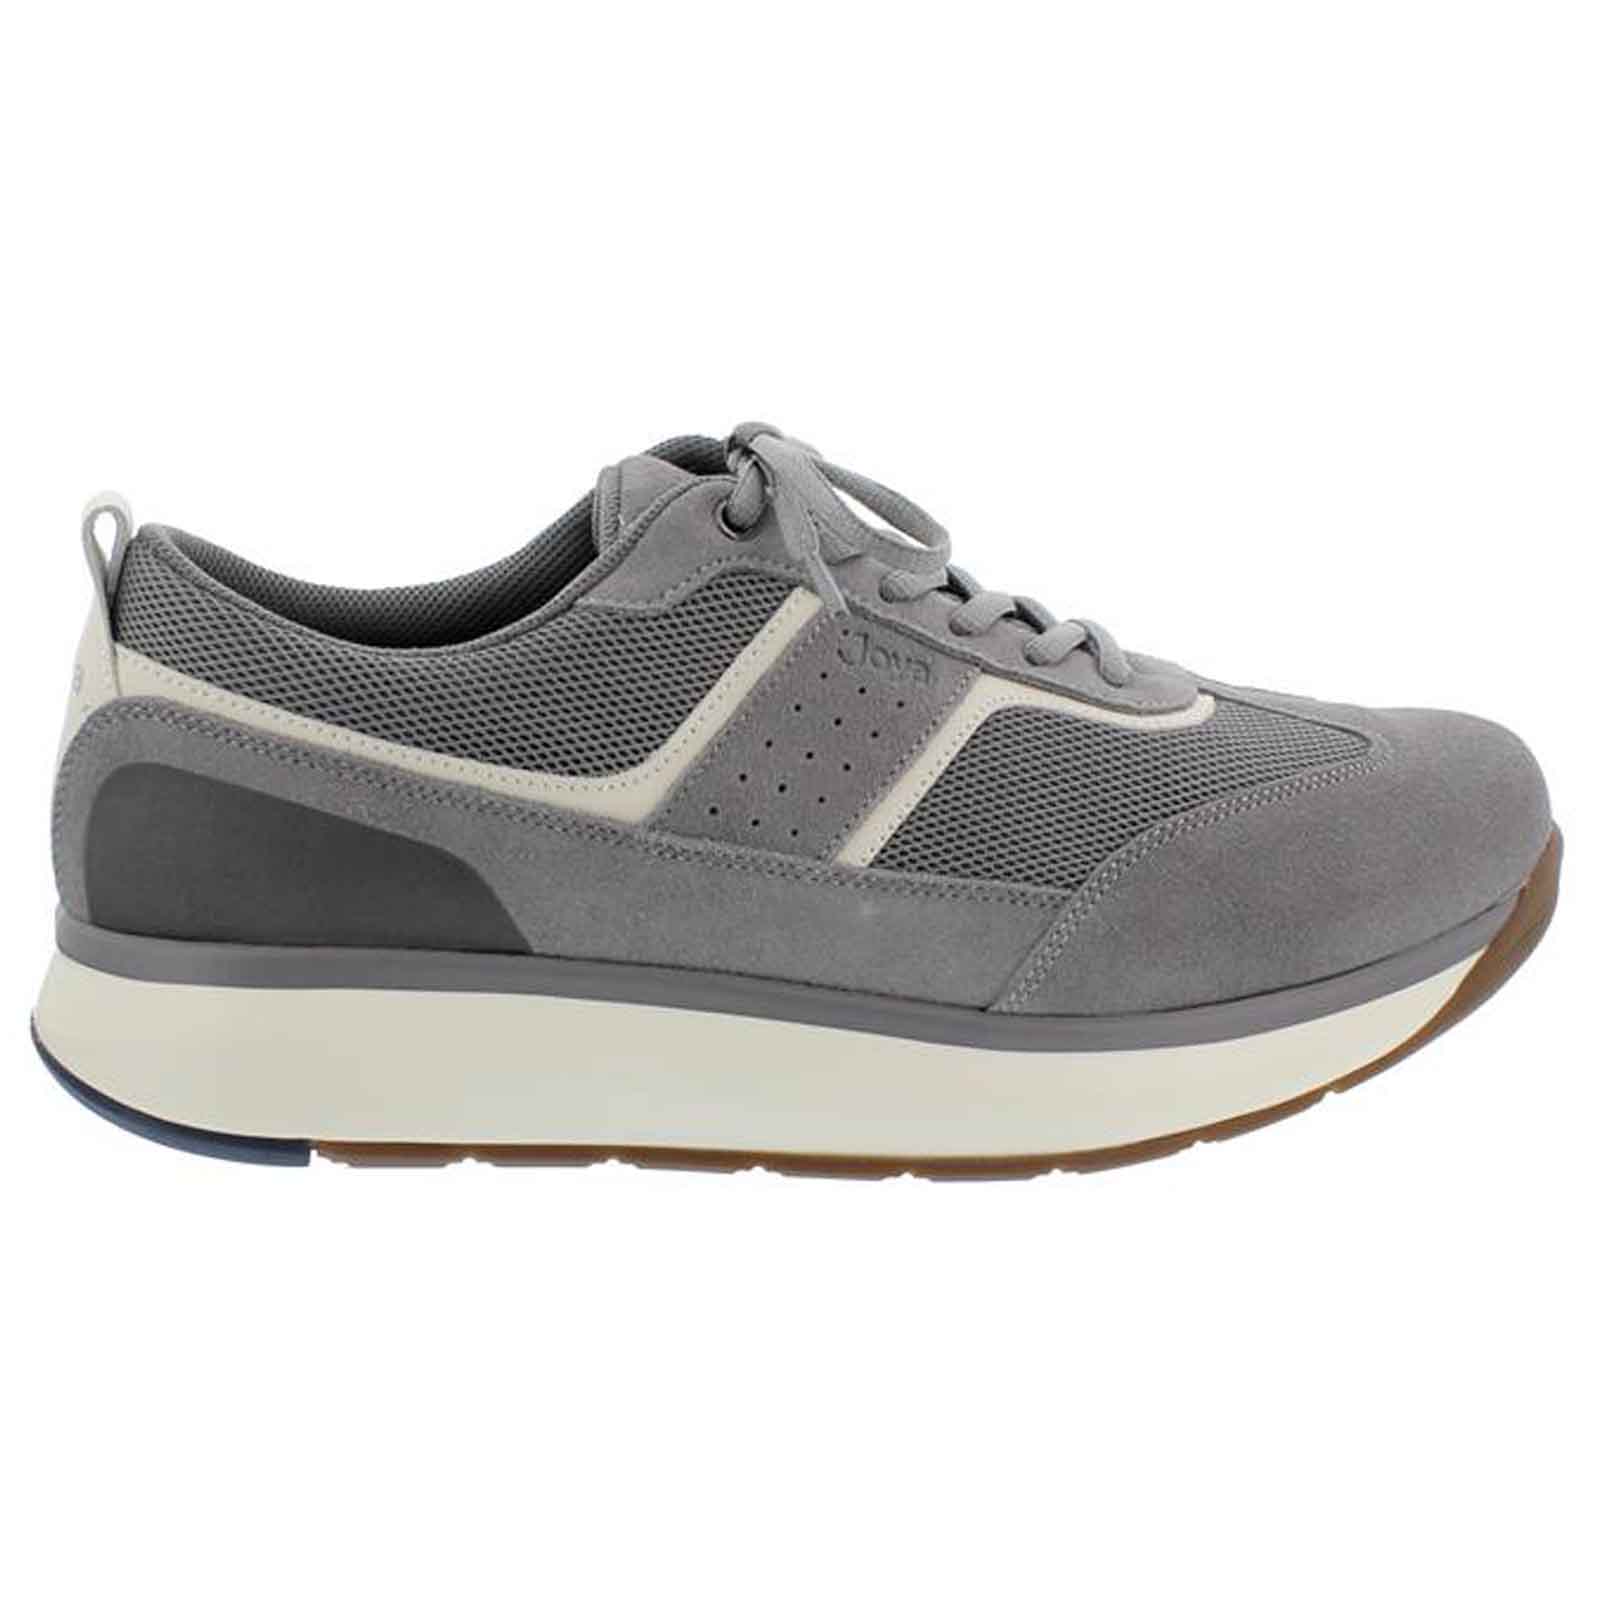 Joya David II Suede Textile Mens Sneakers#color_grey